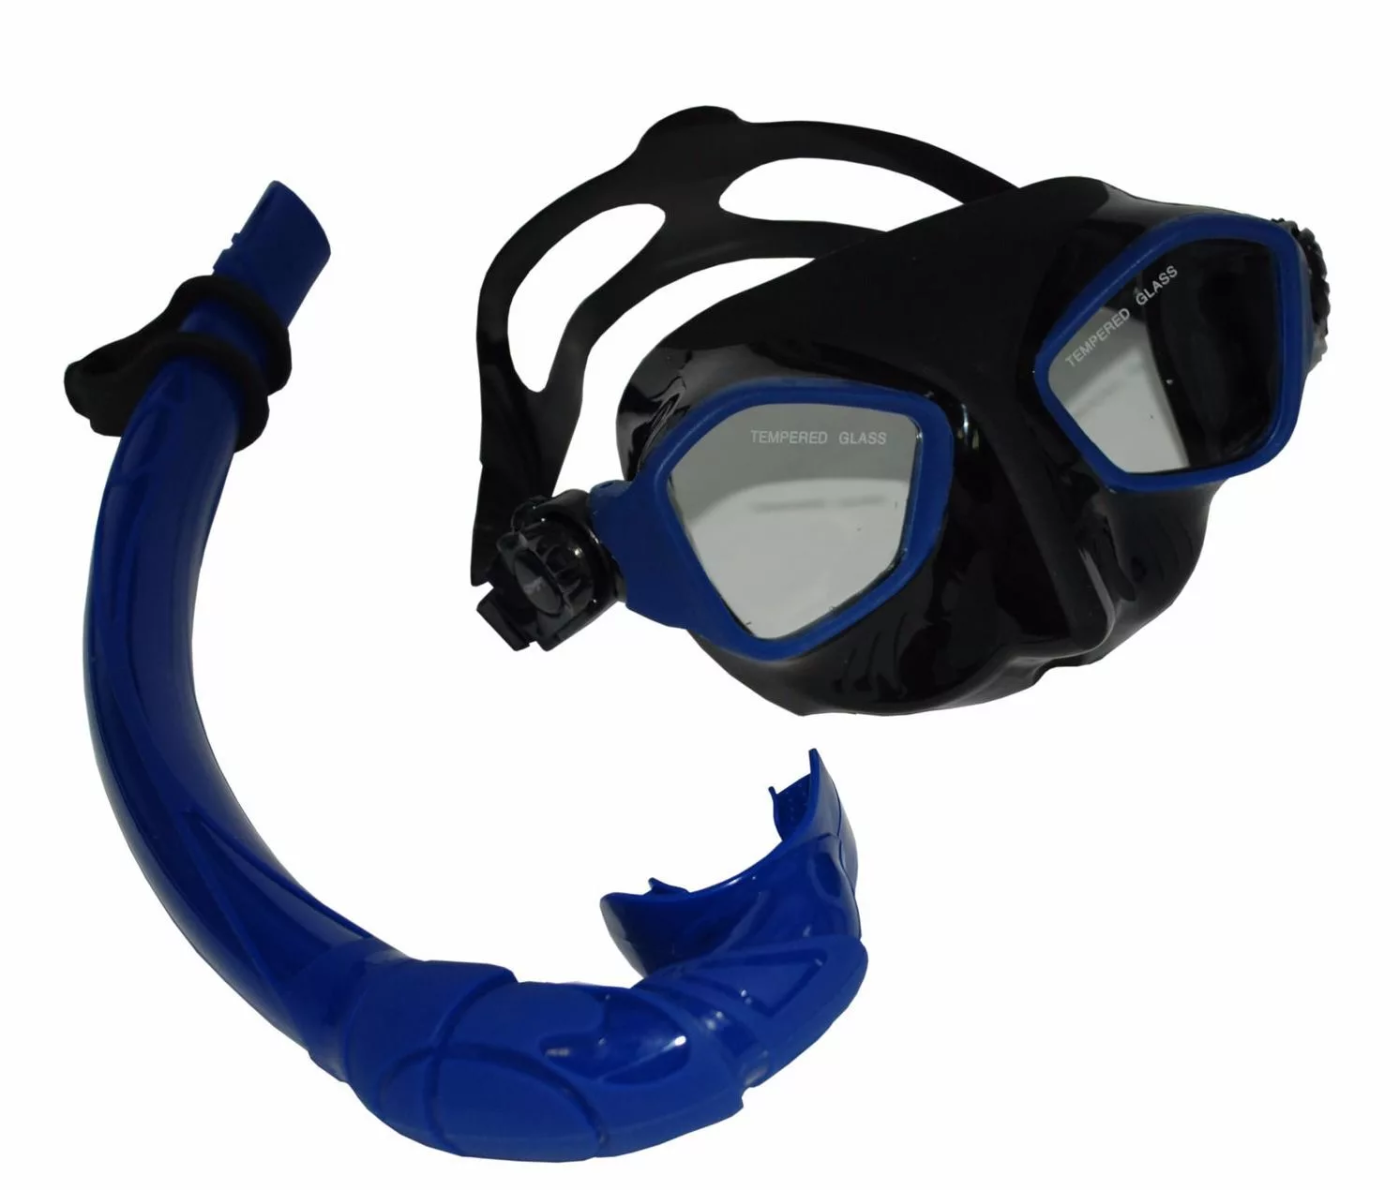 Маска Mondial для плавания. Маска для плавания м2526s. Маска для плавания Wave m-1328. Stingray маска для плавания. Маска для плавания купить в москве